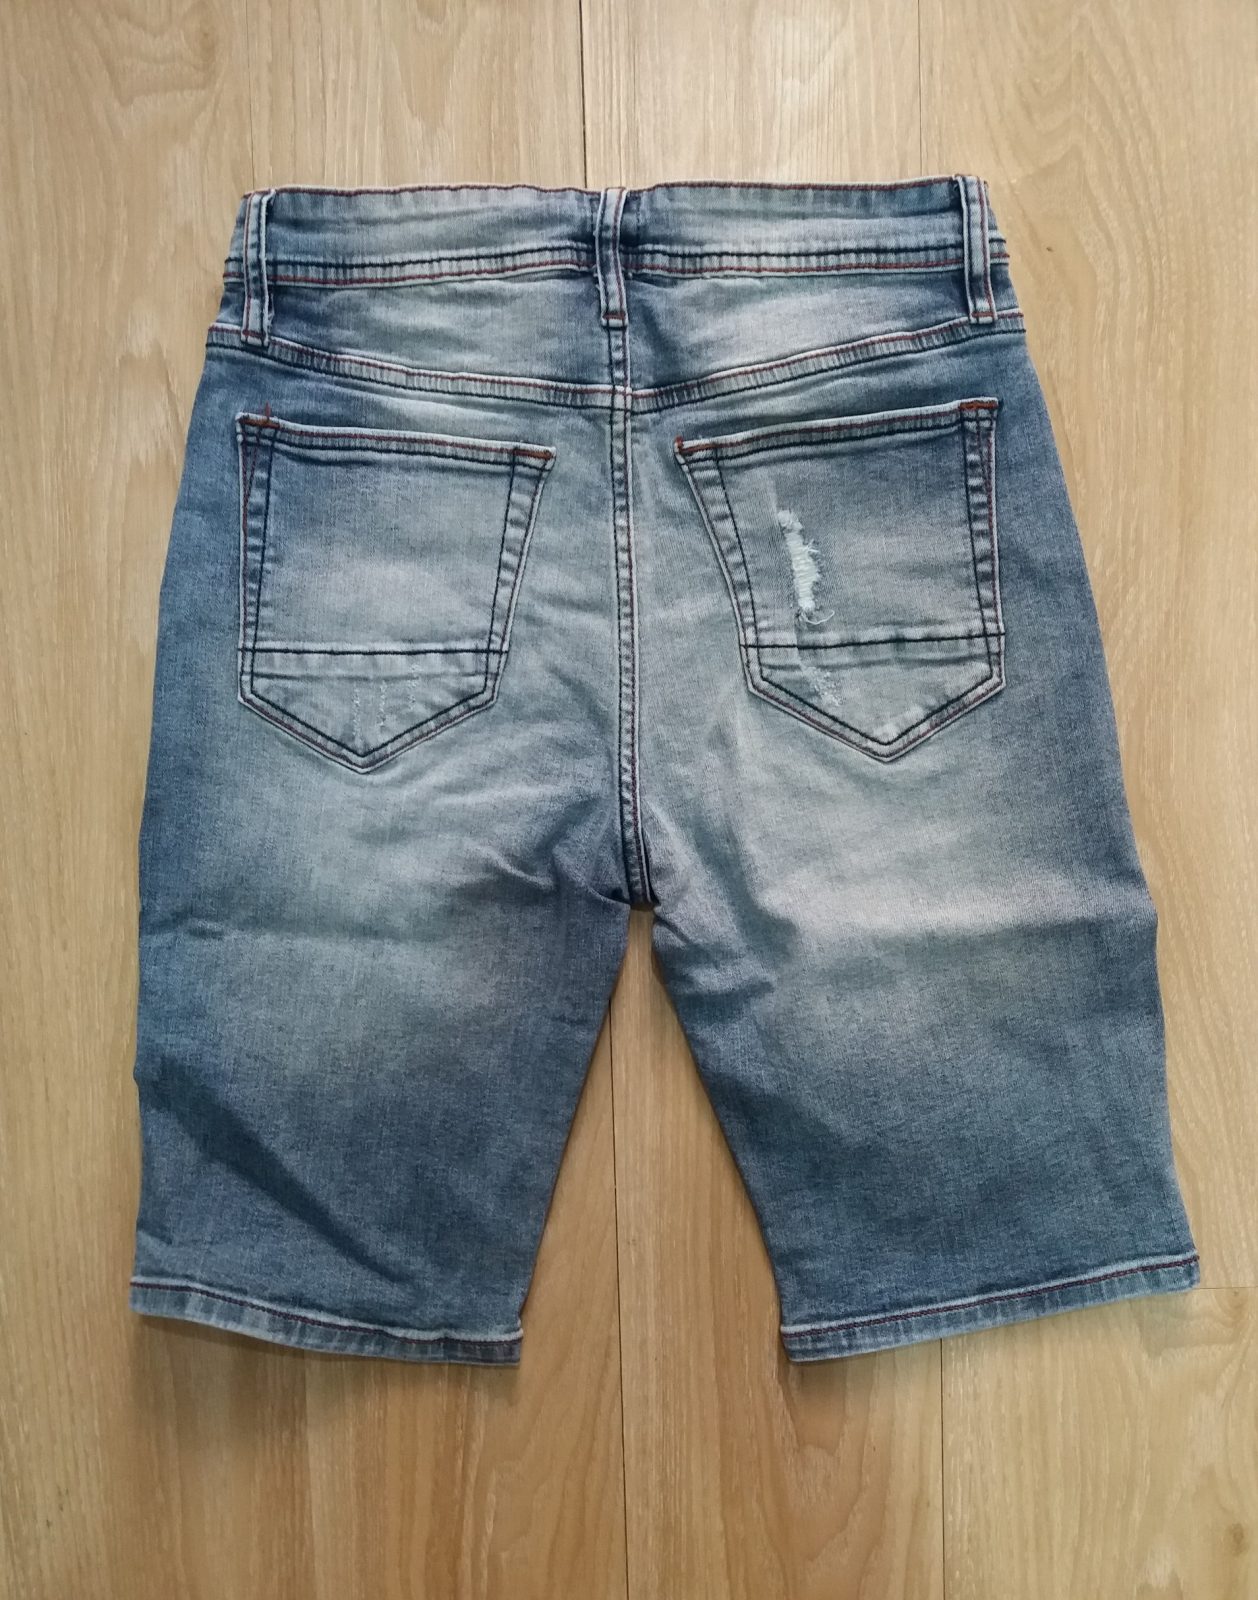 Hình Quần shorts jeans nam GAP-S01 Ripped light washed